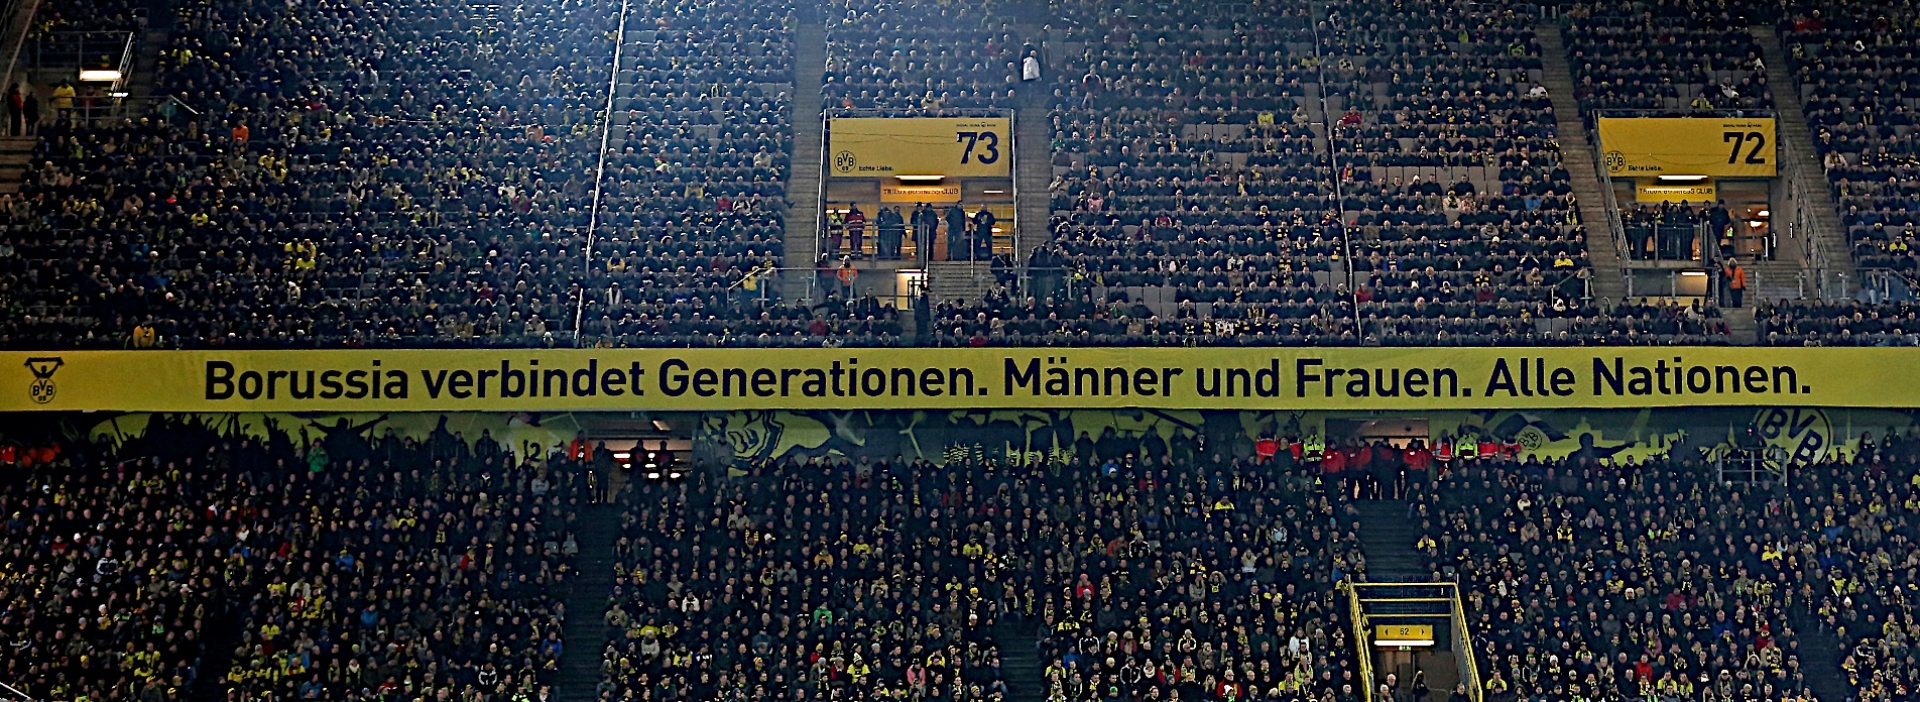 Borussia verbindet Banner